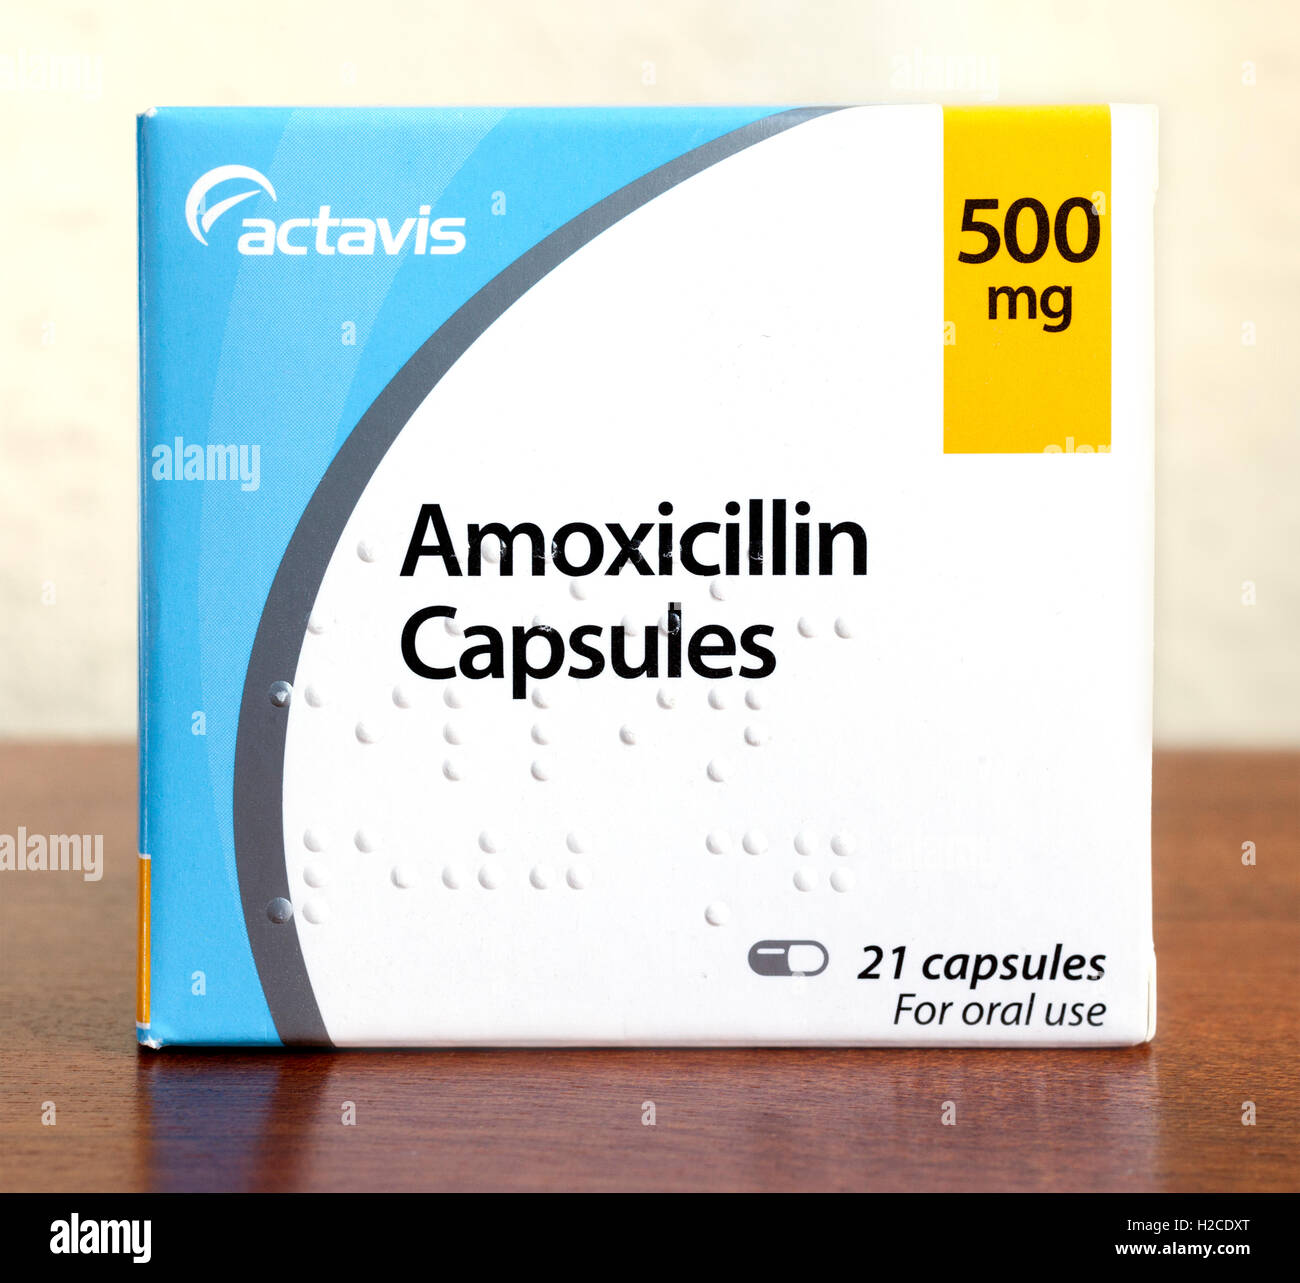 Stock Foto von einer Schachtel mit Amoxicillin (Penicillin Antibiotikum) Kapseln von Actavis hergestellt. Braille ist auf der Vorderseite der Box beeindruckt. Stockfoto